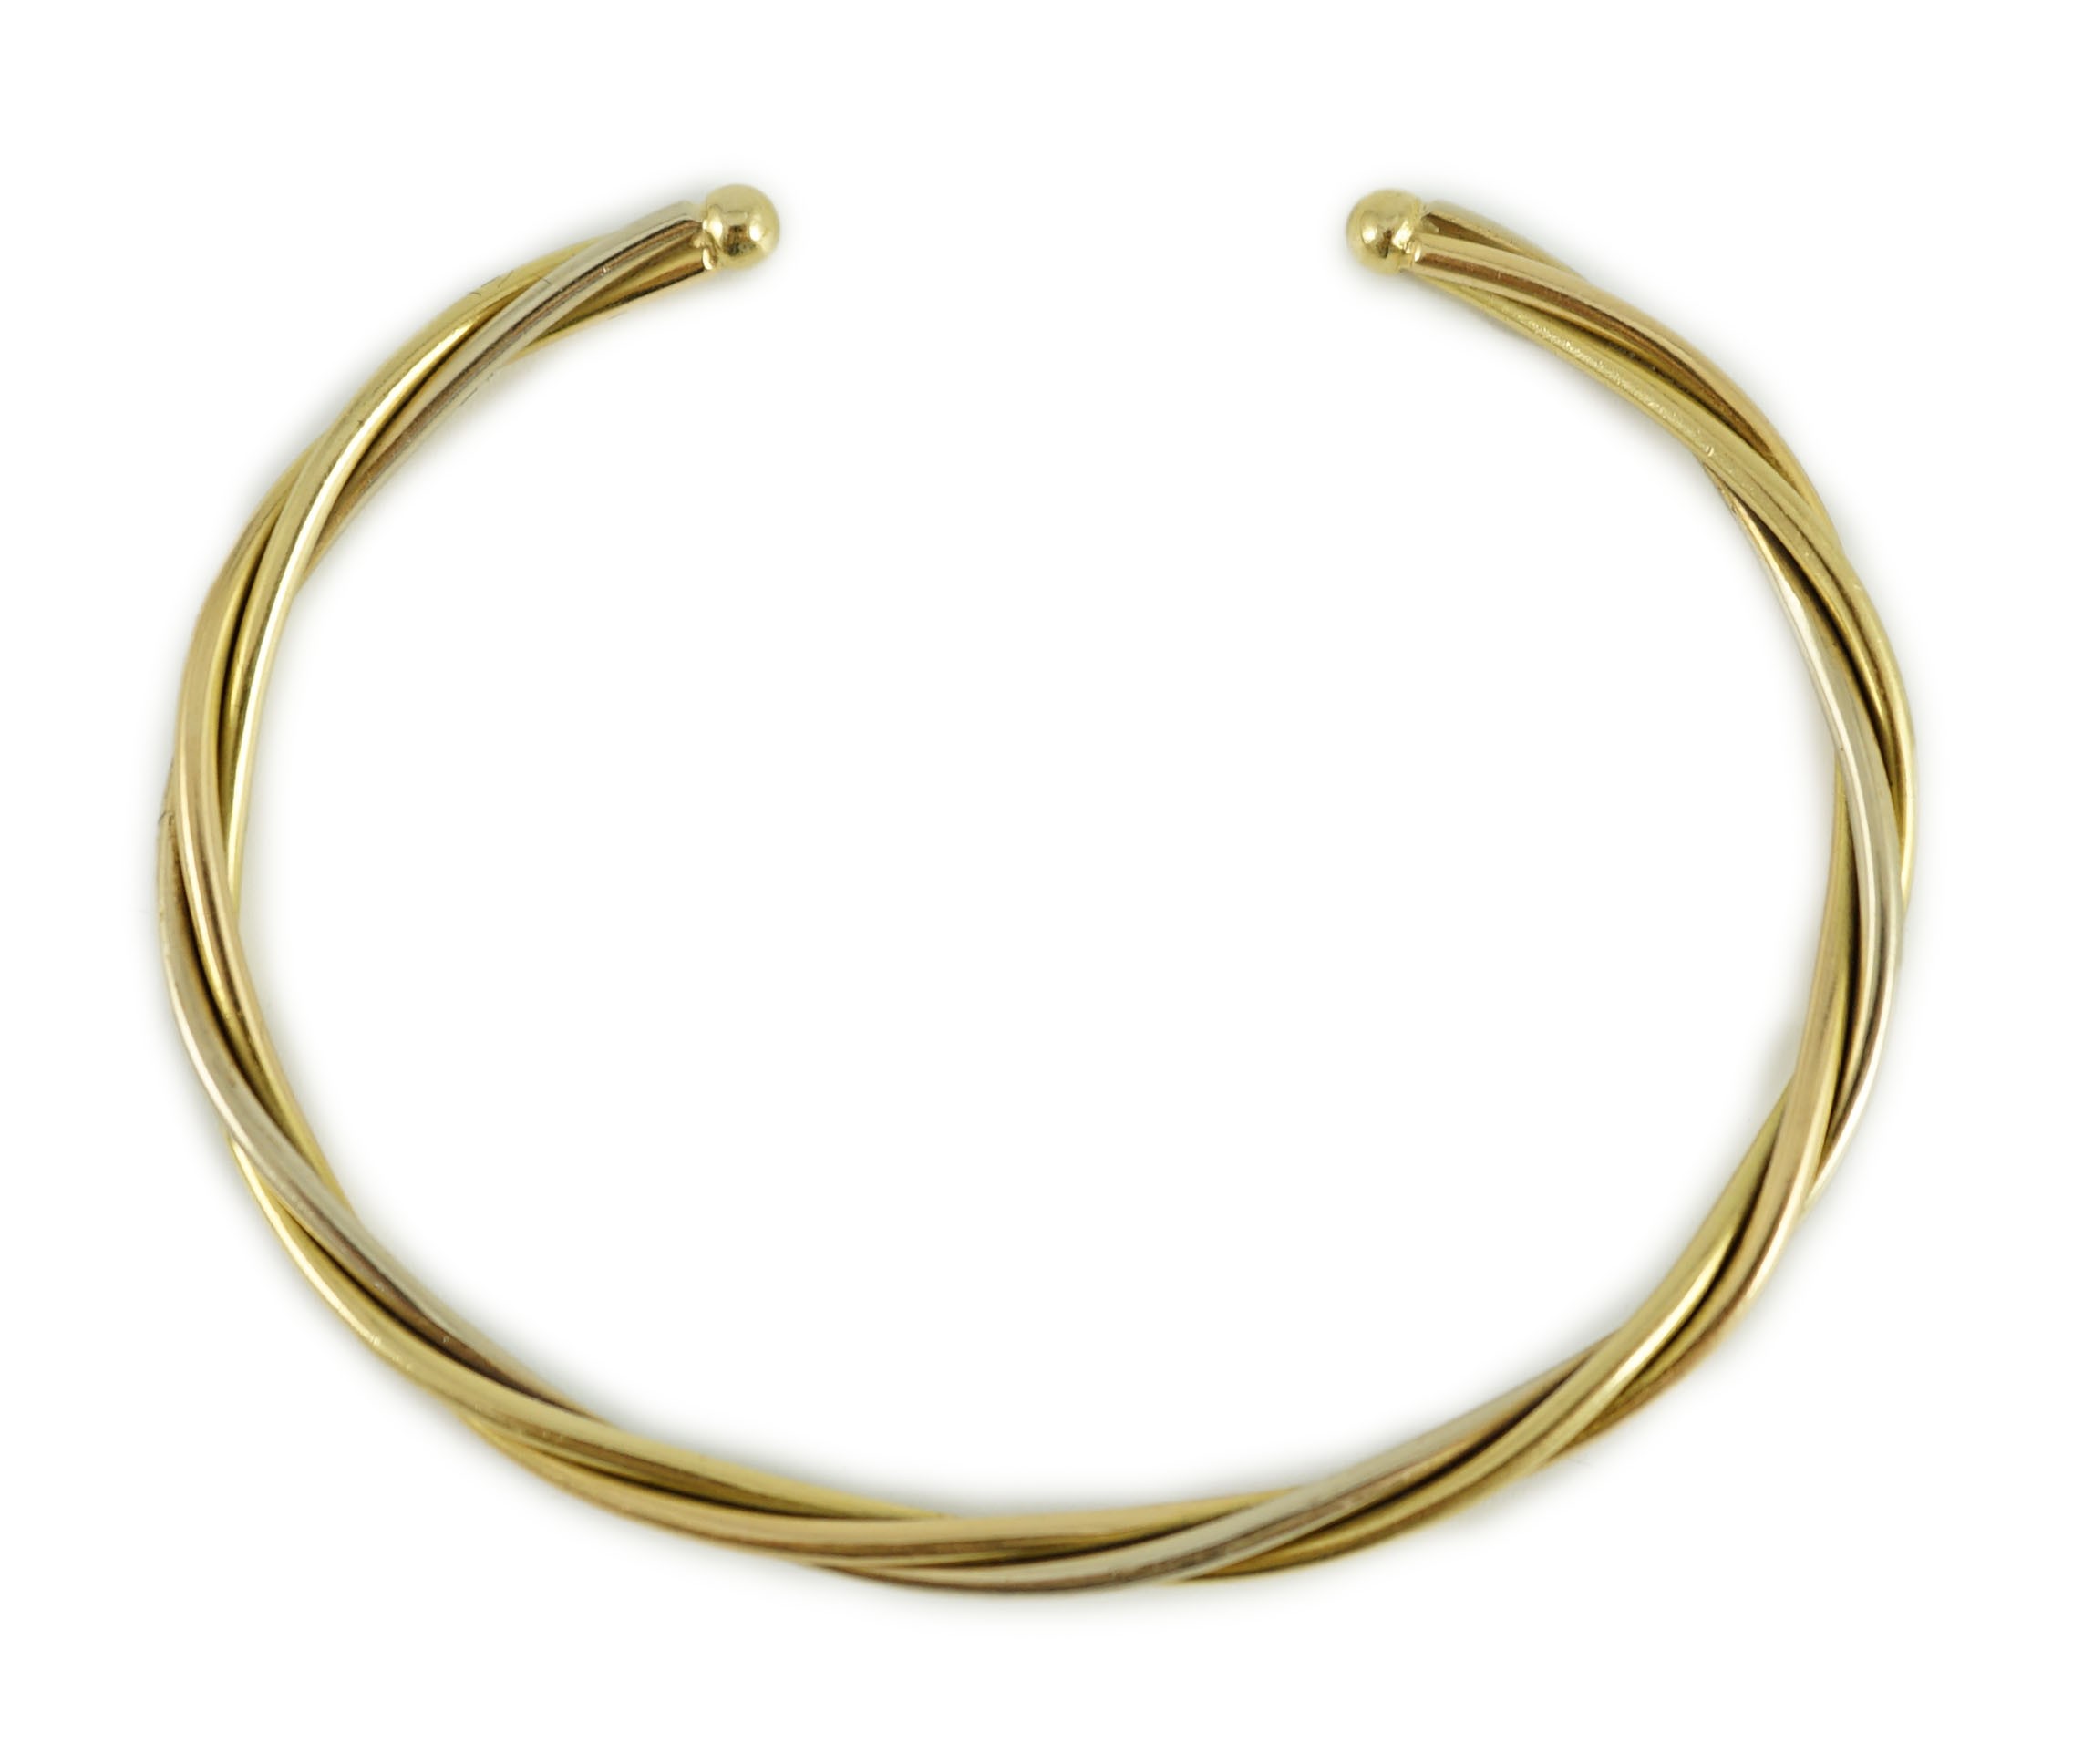 A modern Cartier 18k gold spiral twist open work bangle